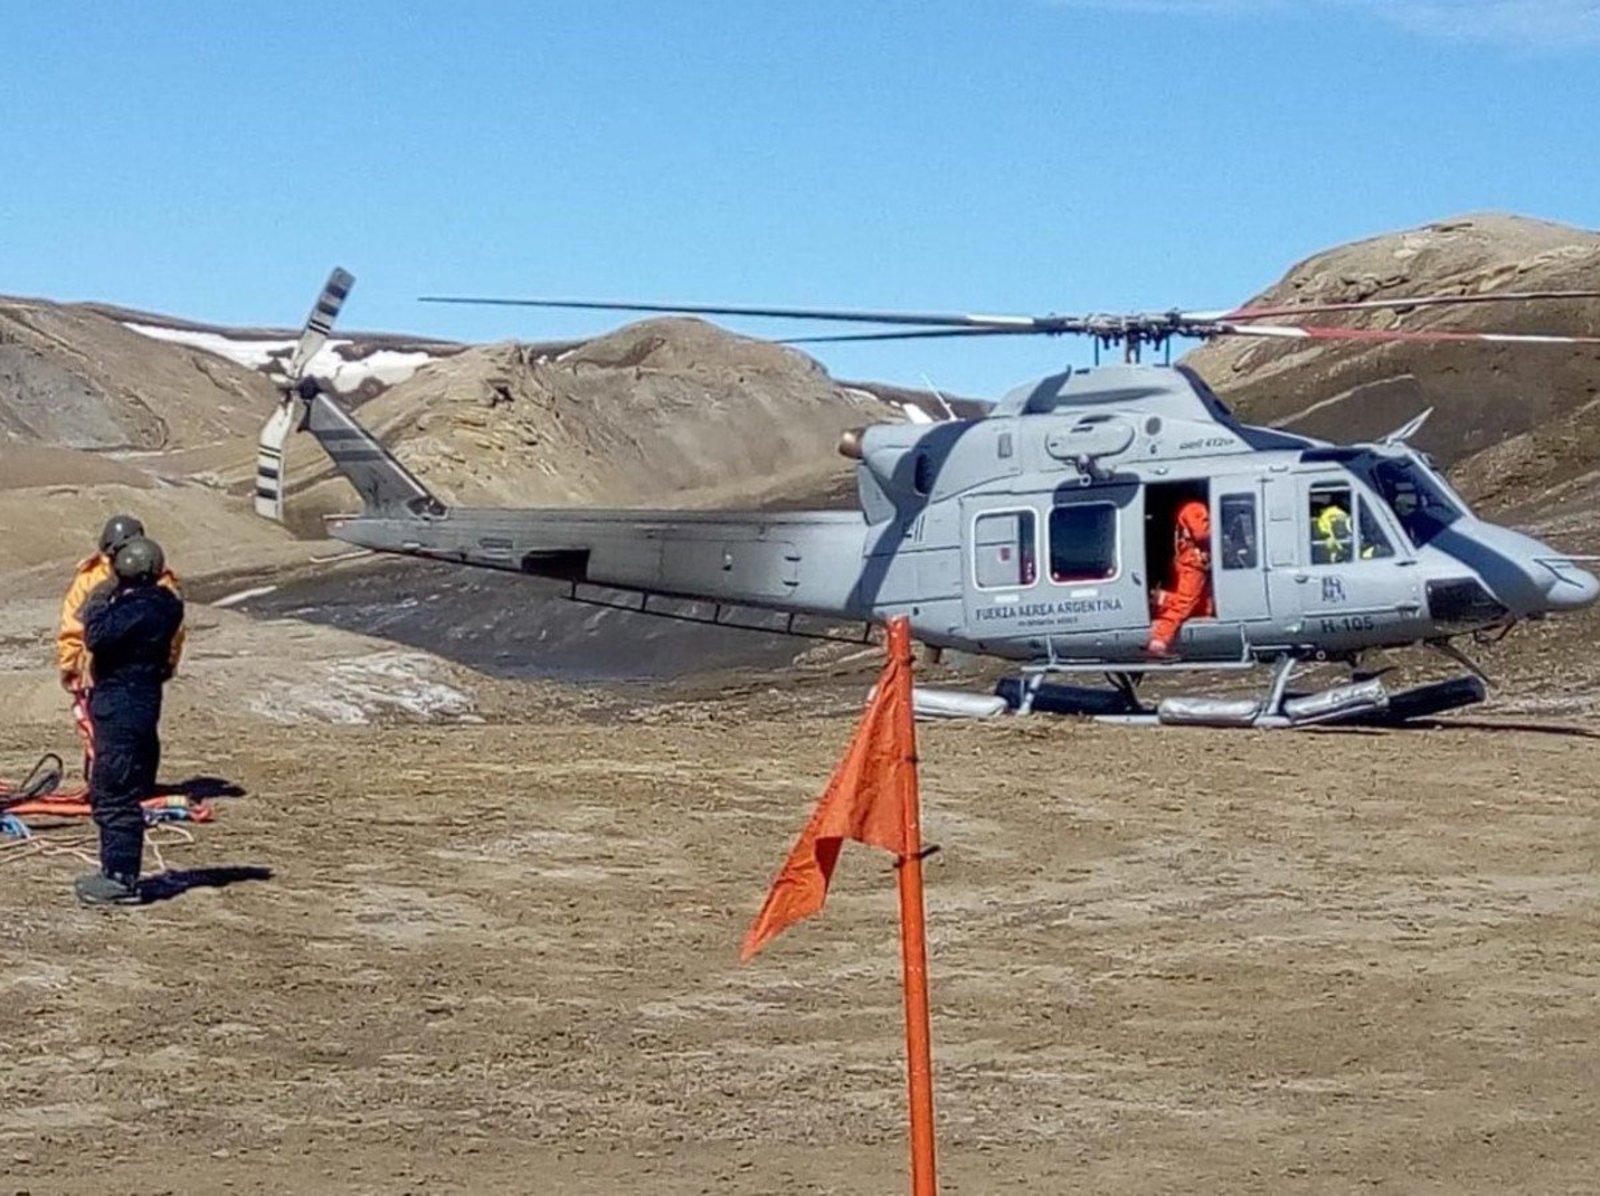 Un grupo de científicos de la República Checa, que se encontraba varado en la Antártida, fue rescatado en un operativo aéreo el sábado pasado, informó ayer el Departamento de Comunicación del Estado Mayor Conjunto de las Fuerzas Armadas argentinas. (AGENCIAS)